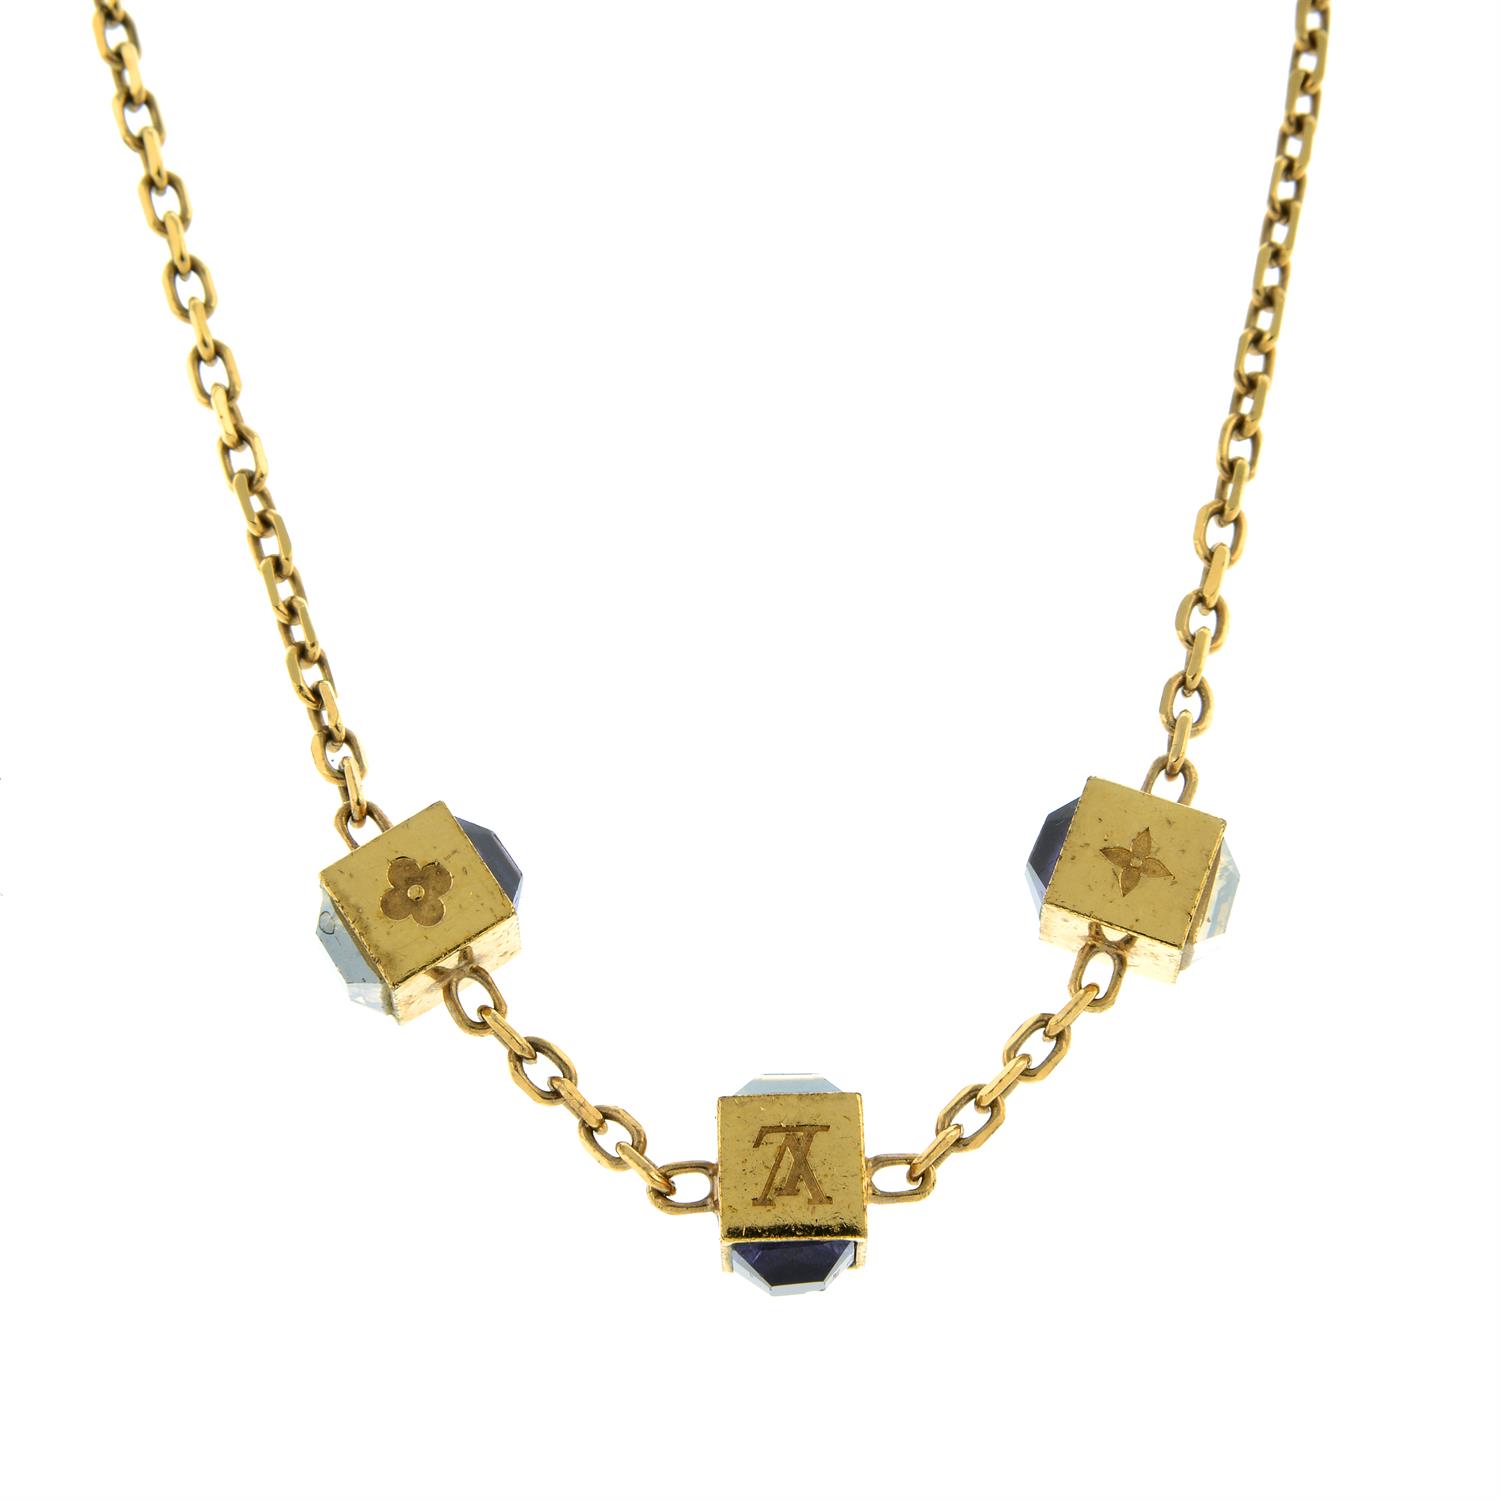 Louis Vuitton - Gamble necklace.